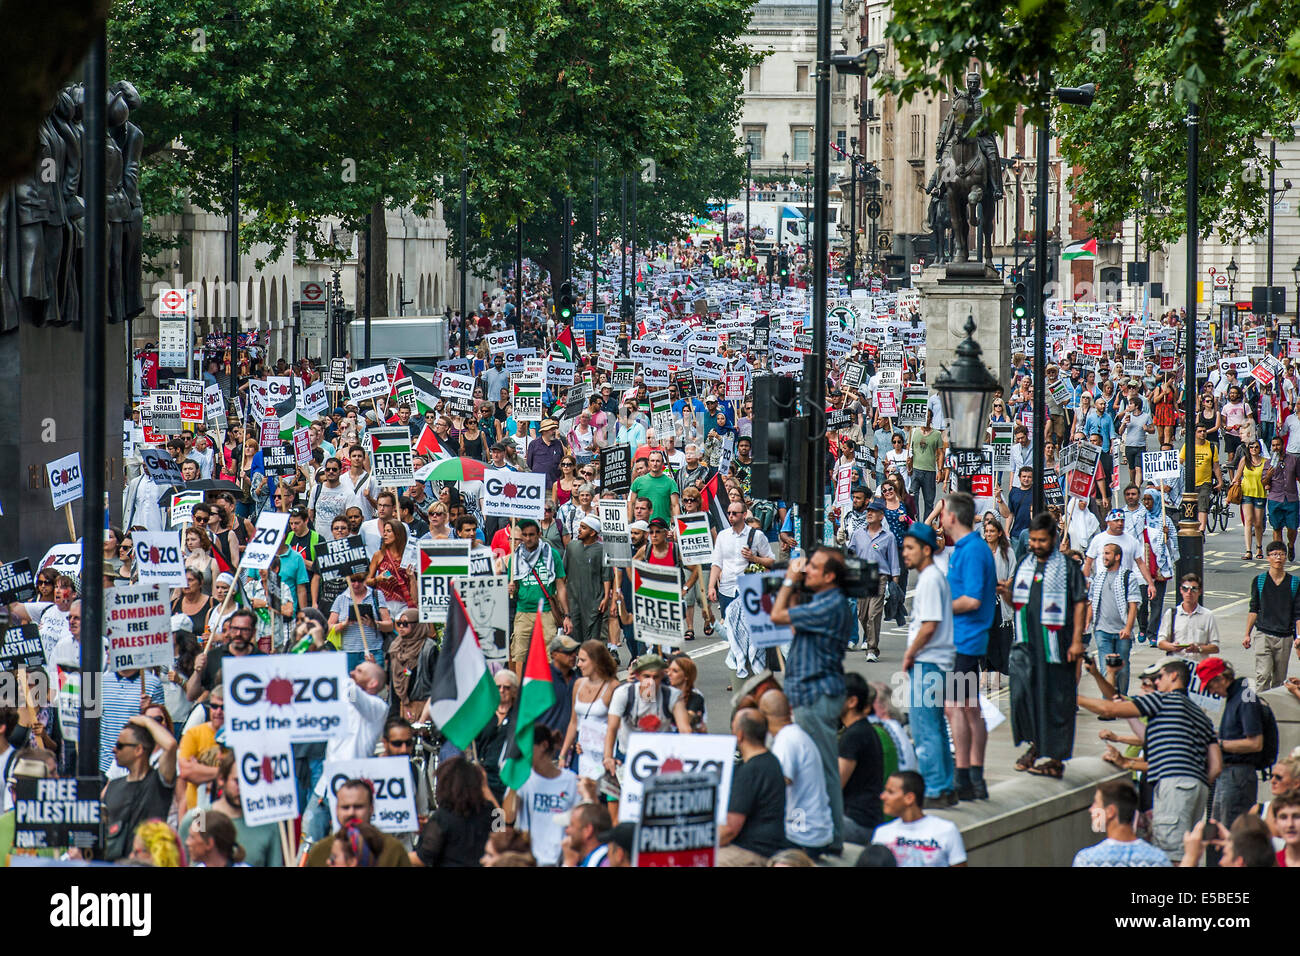 London, UK. 26. Juli 2014. Der Marsch geht Downing Street. Das "Massaker" in Gaza Protest zu stoppen. Eine Demonstration von genannt: stoppen Sie die Krieg-Koalition, Palestine Solidarity Campaign Kampagne für nukleare Abrüstung, Freunde der Al Aqsa, britische Muslim Initiative, Muslim Association of Britain, palästinensische Forum in Großbritannien. Sie bei der israelischen Botschaft montiert und marschierten zum Parlament. Sie forderten "Israels Bombardierung und Tötung, jetzt und für David Cameron zu stoppen, Unterstützung der israelischen Kriegsverbrechen zu stoppen". London, 26. Juli 2014. Bildnachweis: Guy Bell/Alamy Live-Nachrichten Stockfoto